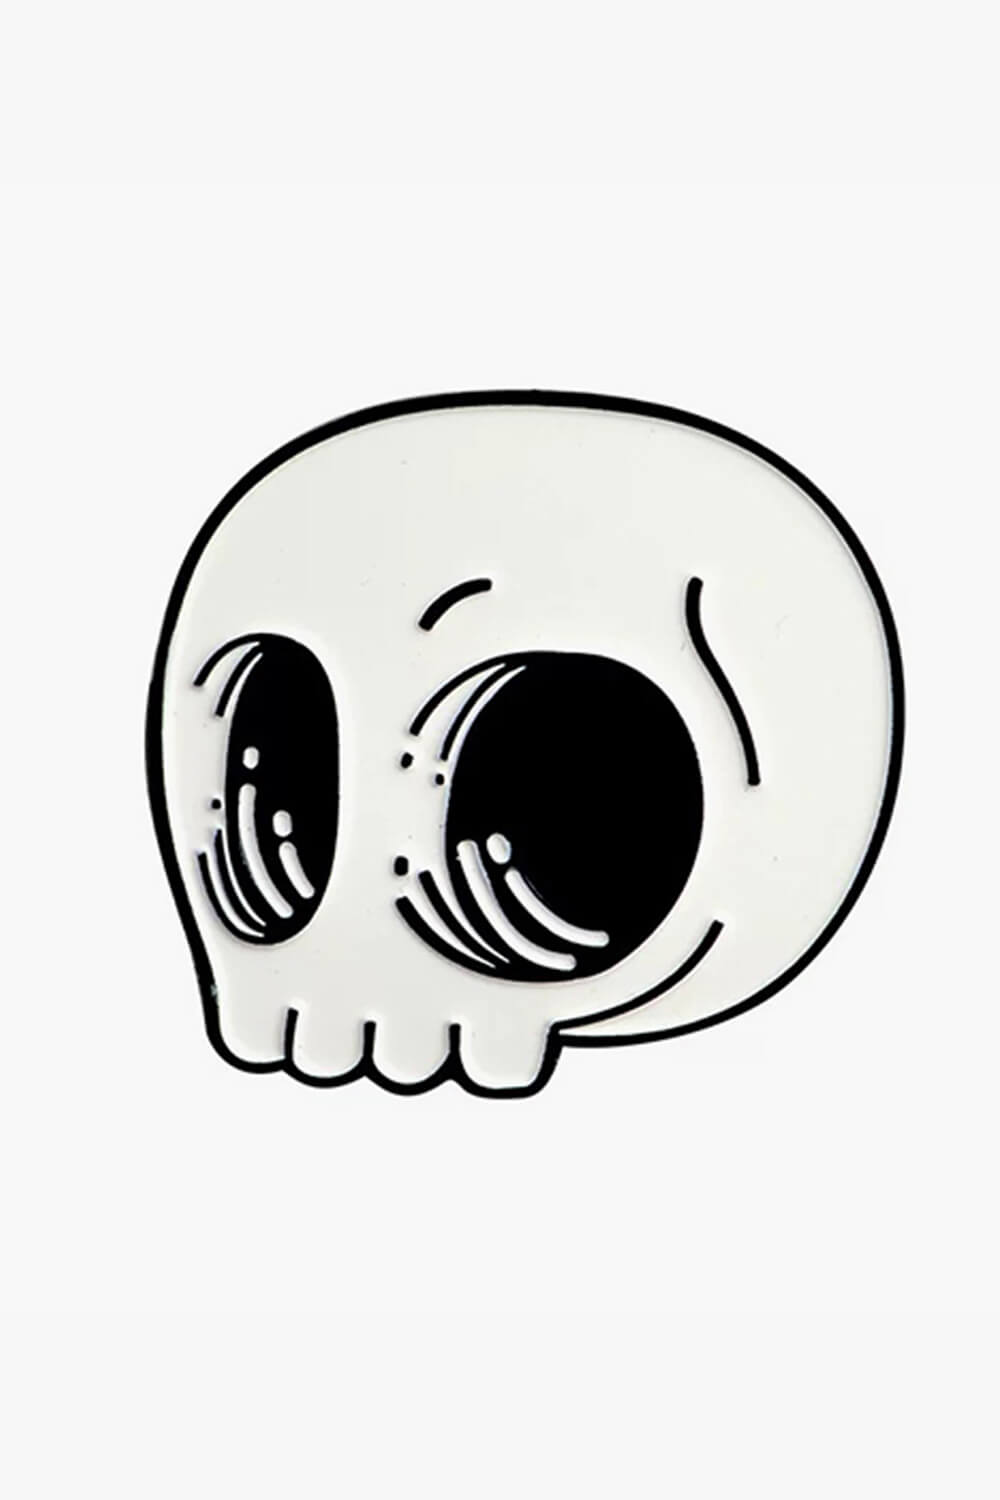 Cute Cartoon Skull Enamel Pin Badge